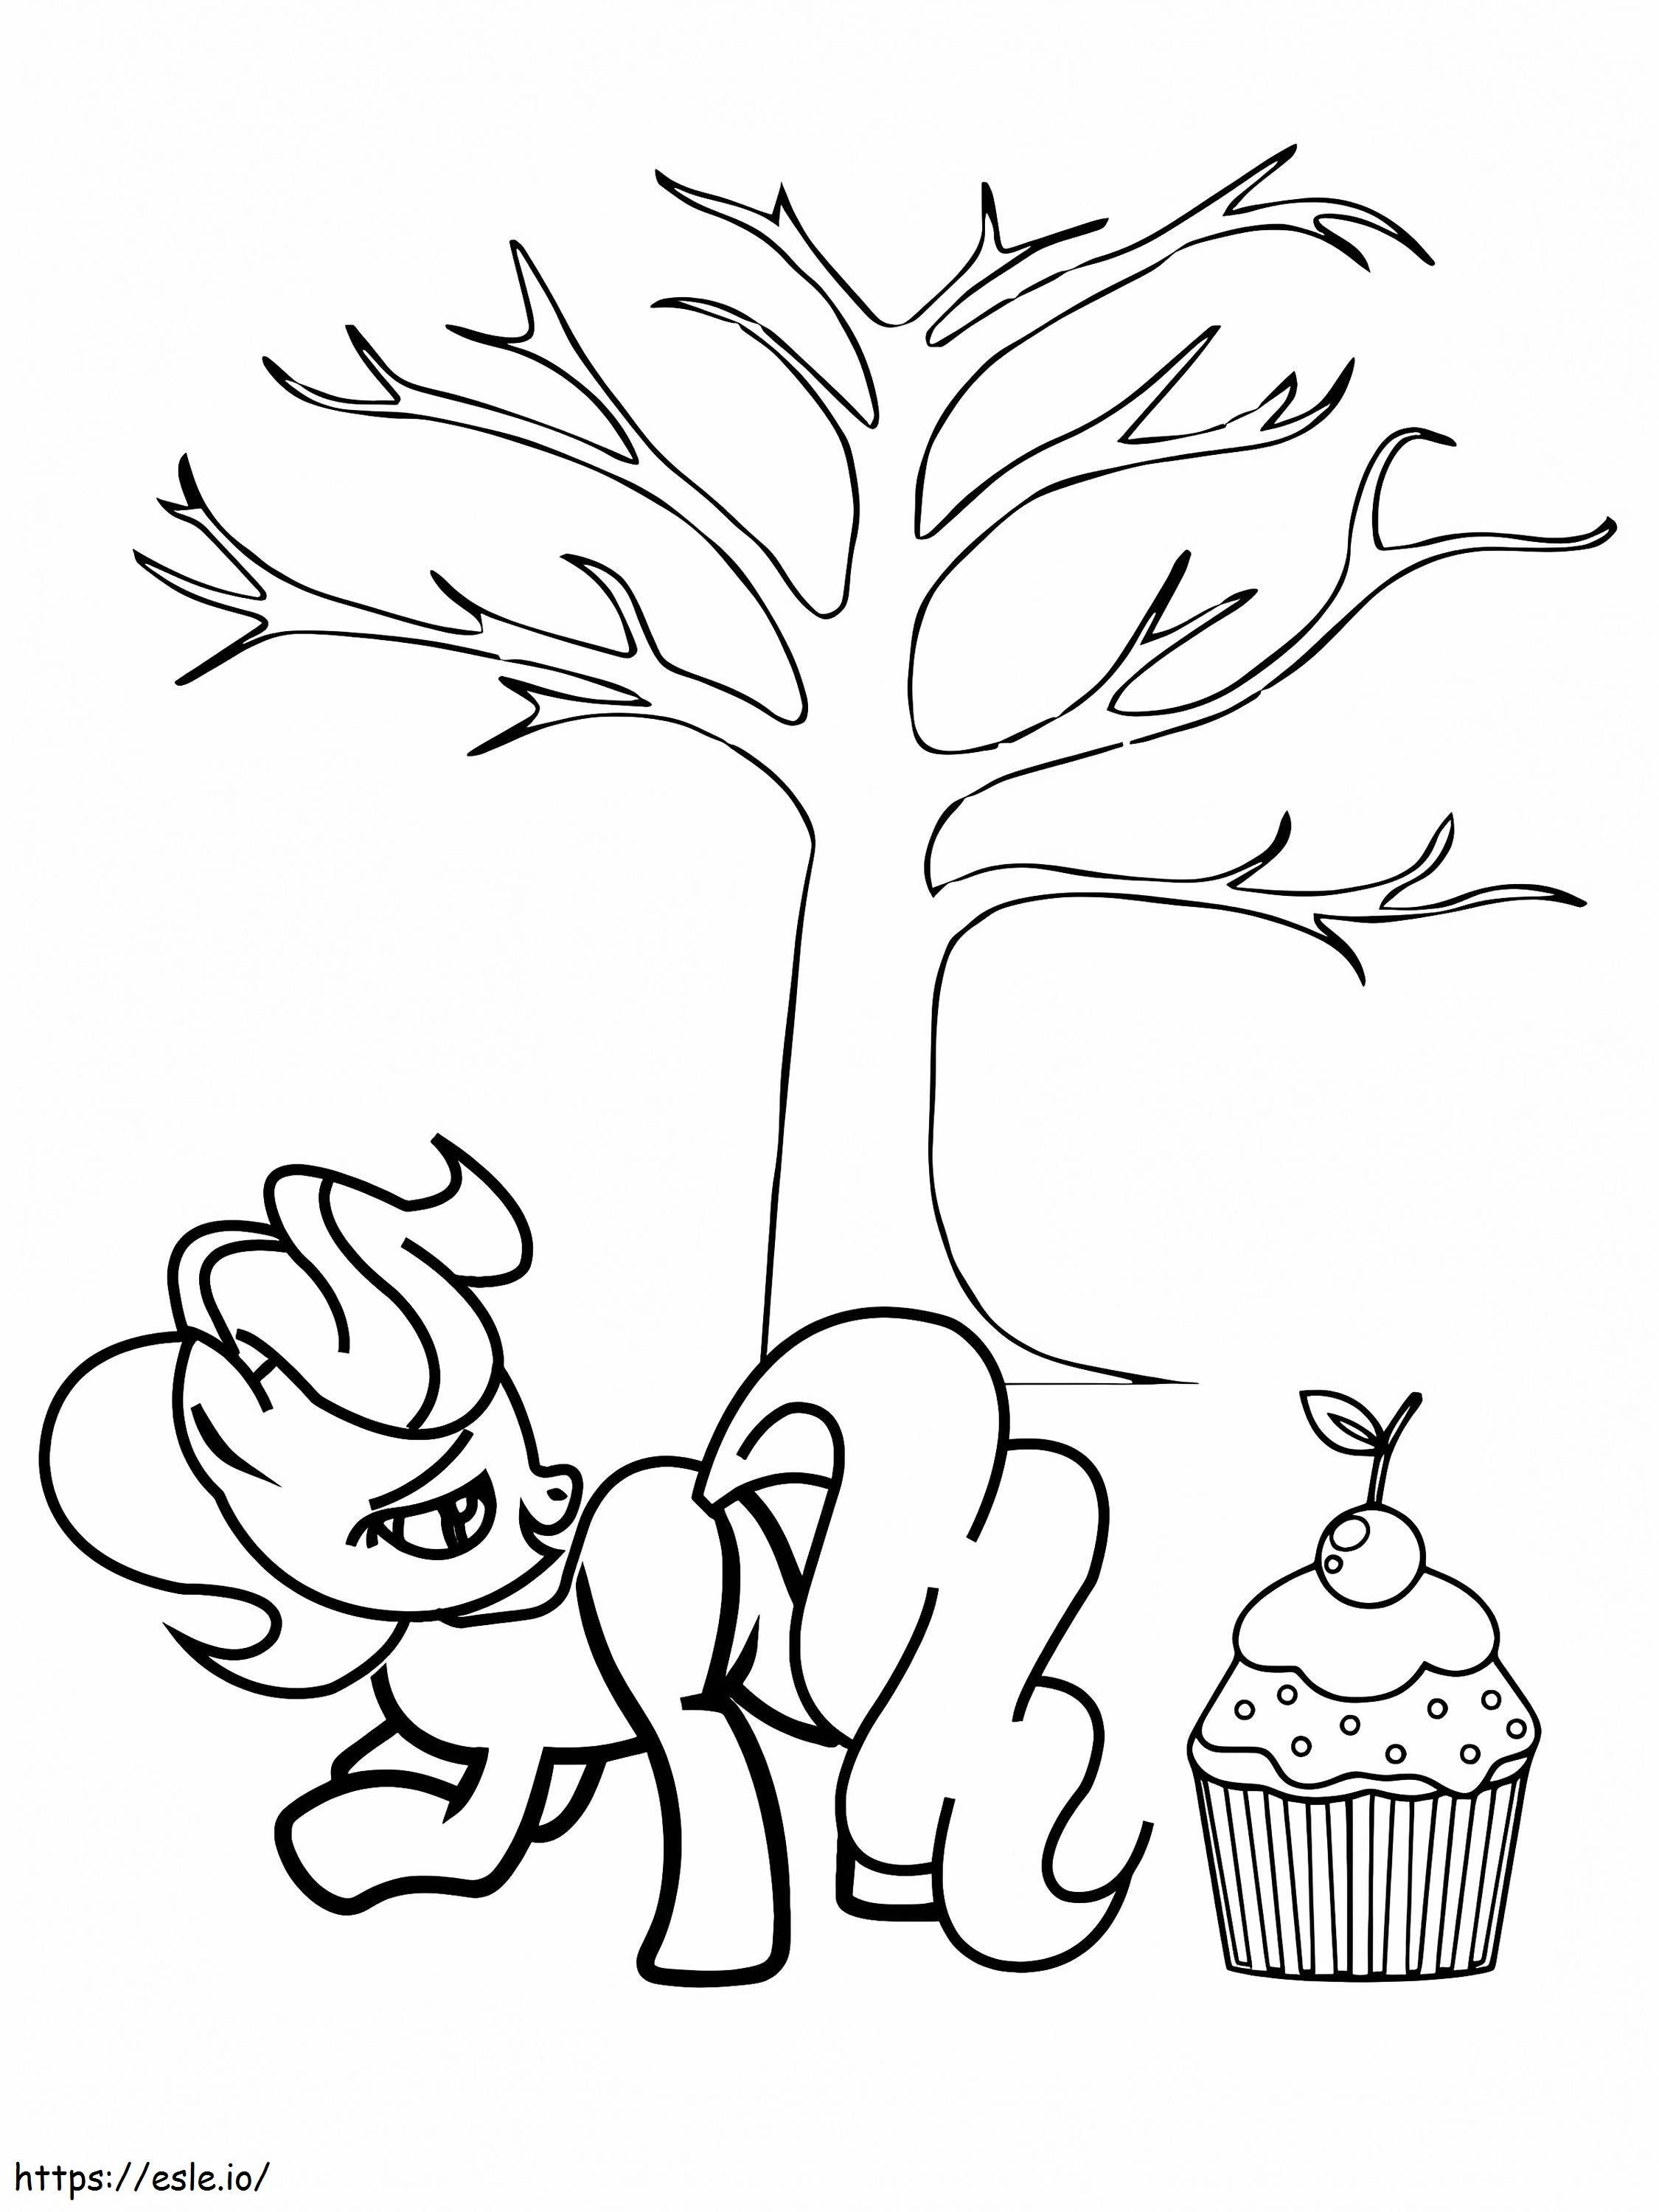 Großer Cupcake und Frau Kuchen unter dem Baum ausmalbilder